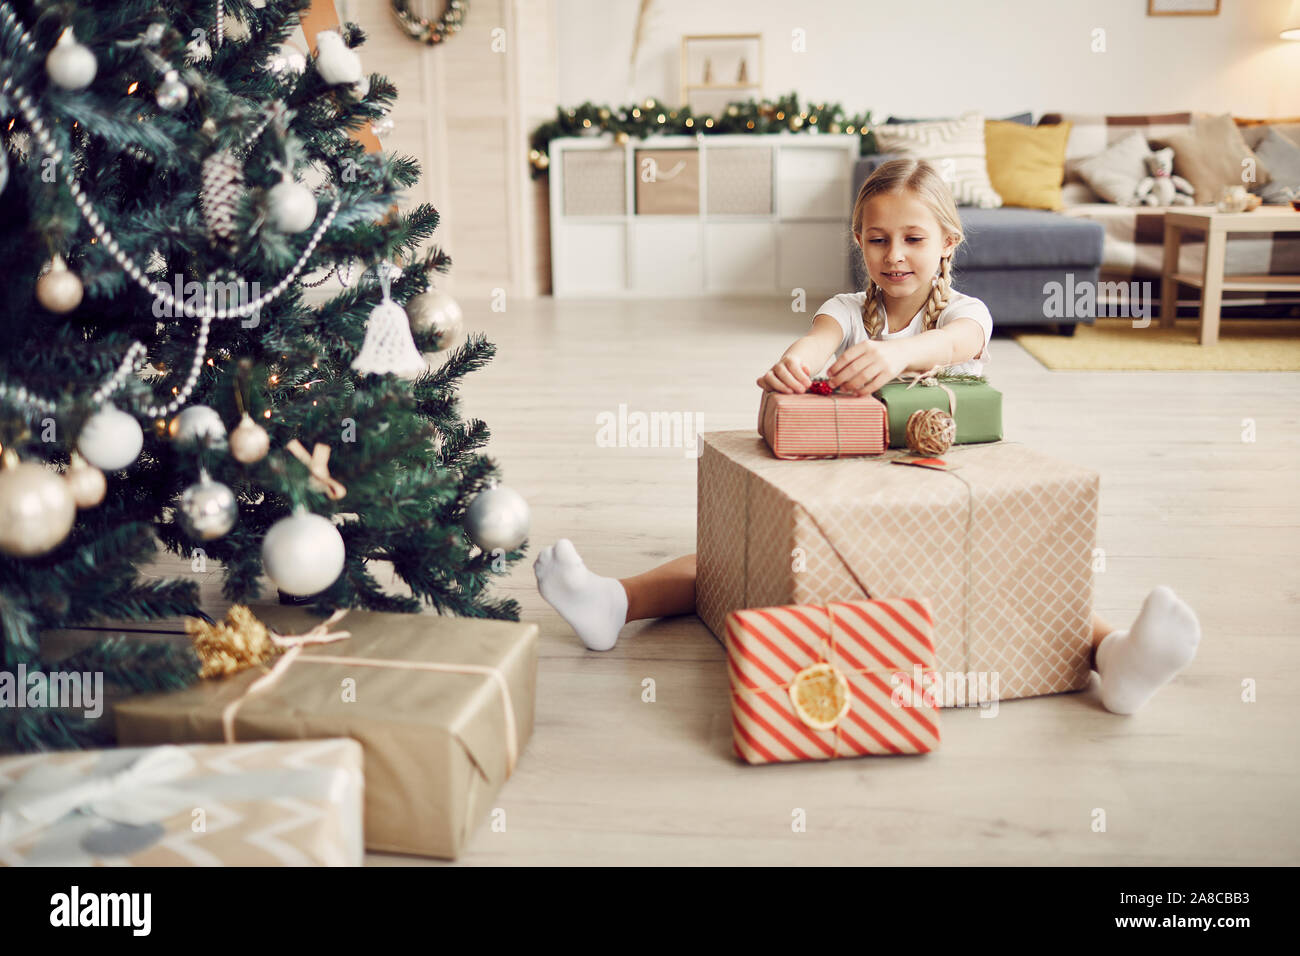 Petite fille aux cheveux blonds assis sur le plancher près de l'arbre de Noël et cadeaux de décoration dans la salle de séjour à la maison Banque D'Images